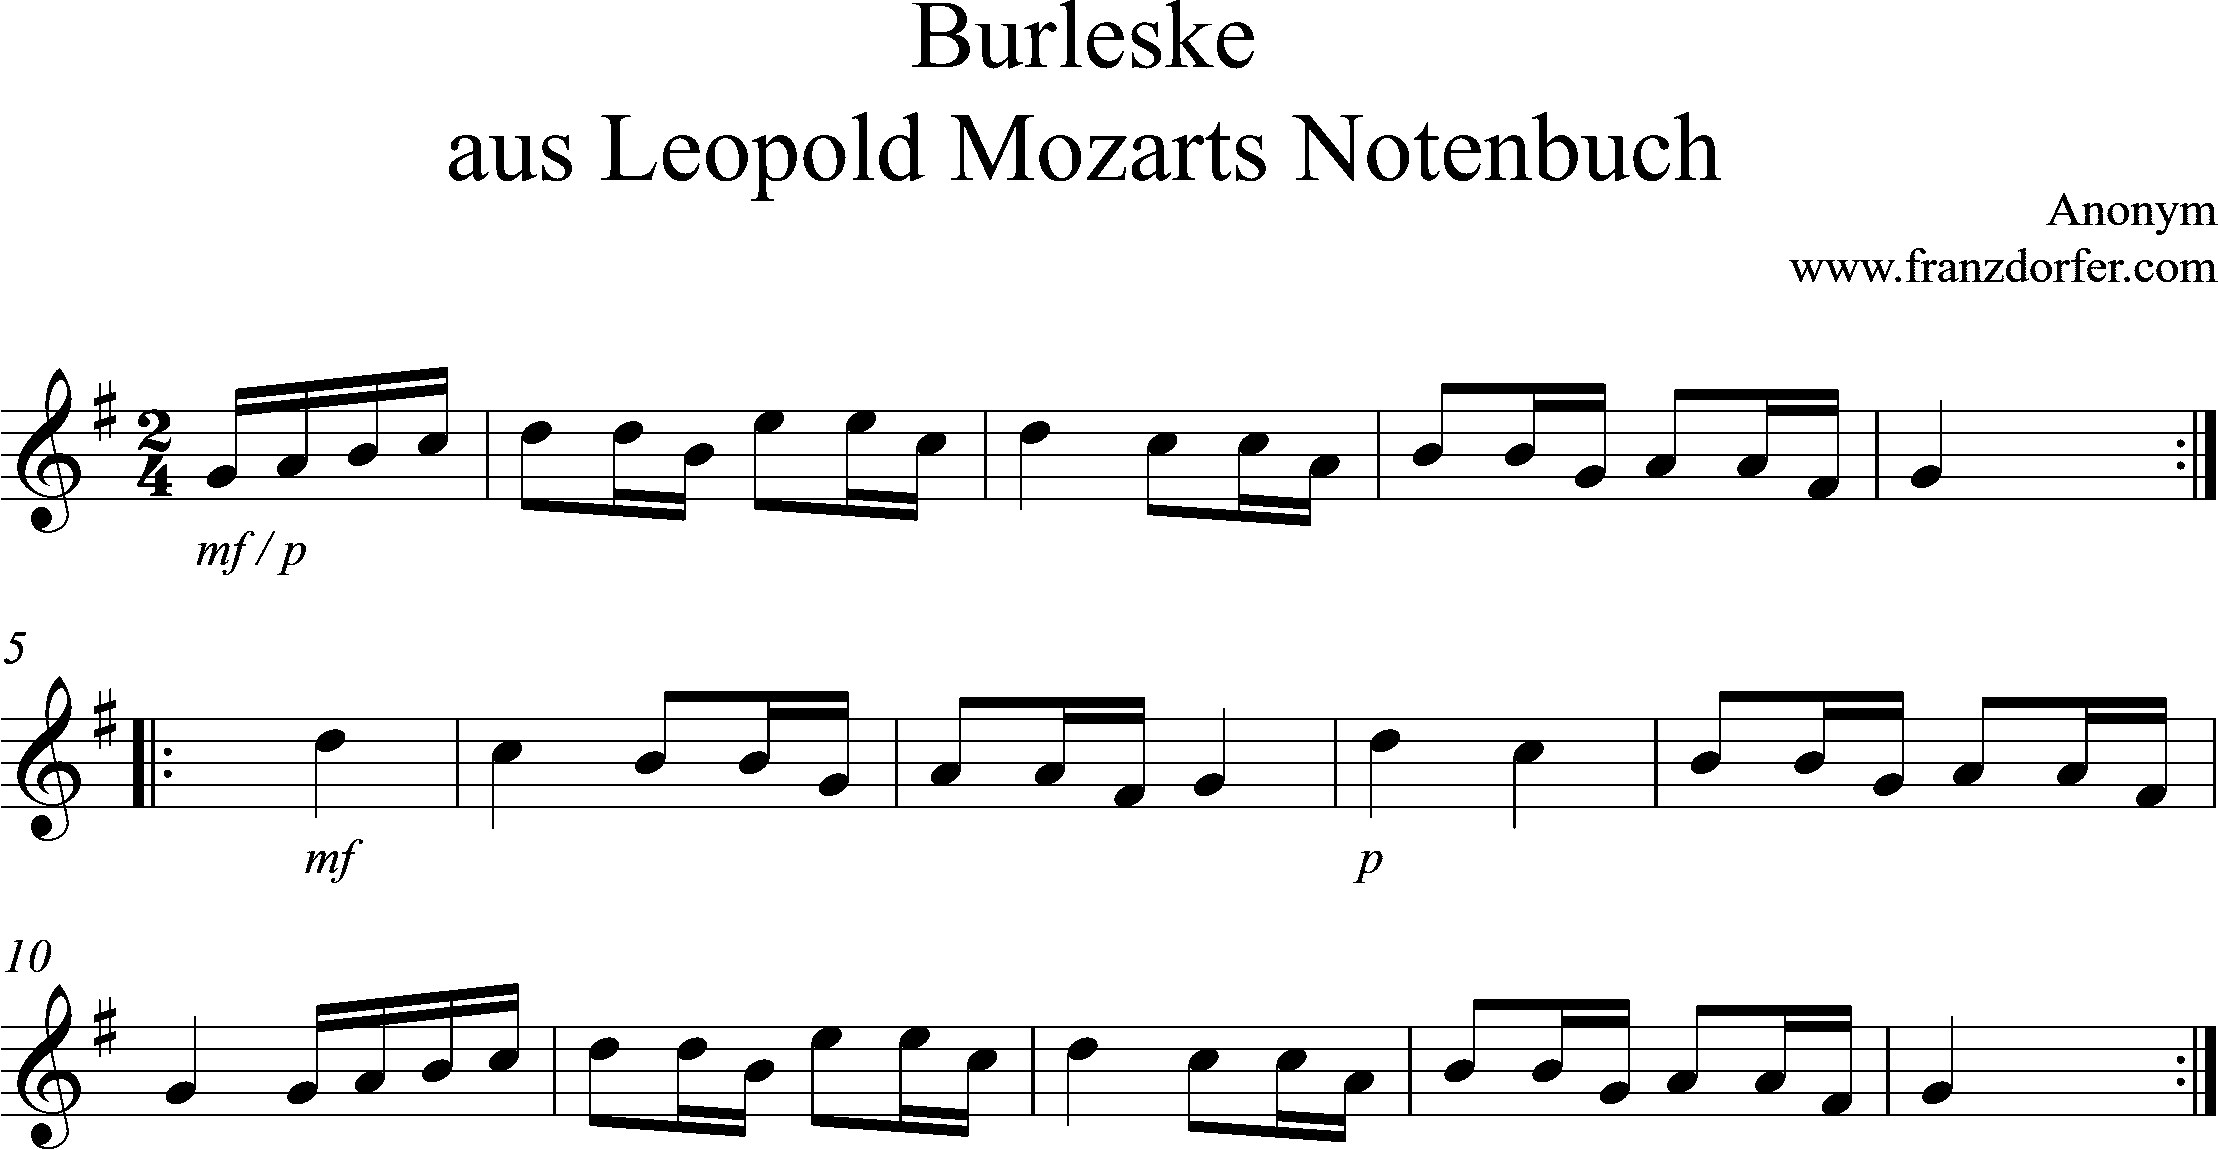 Noten für Blockflöte, Burleske